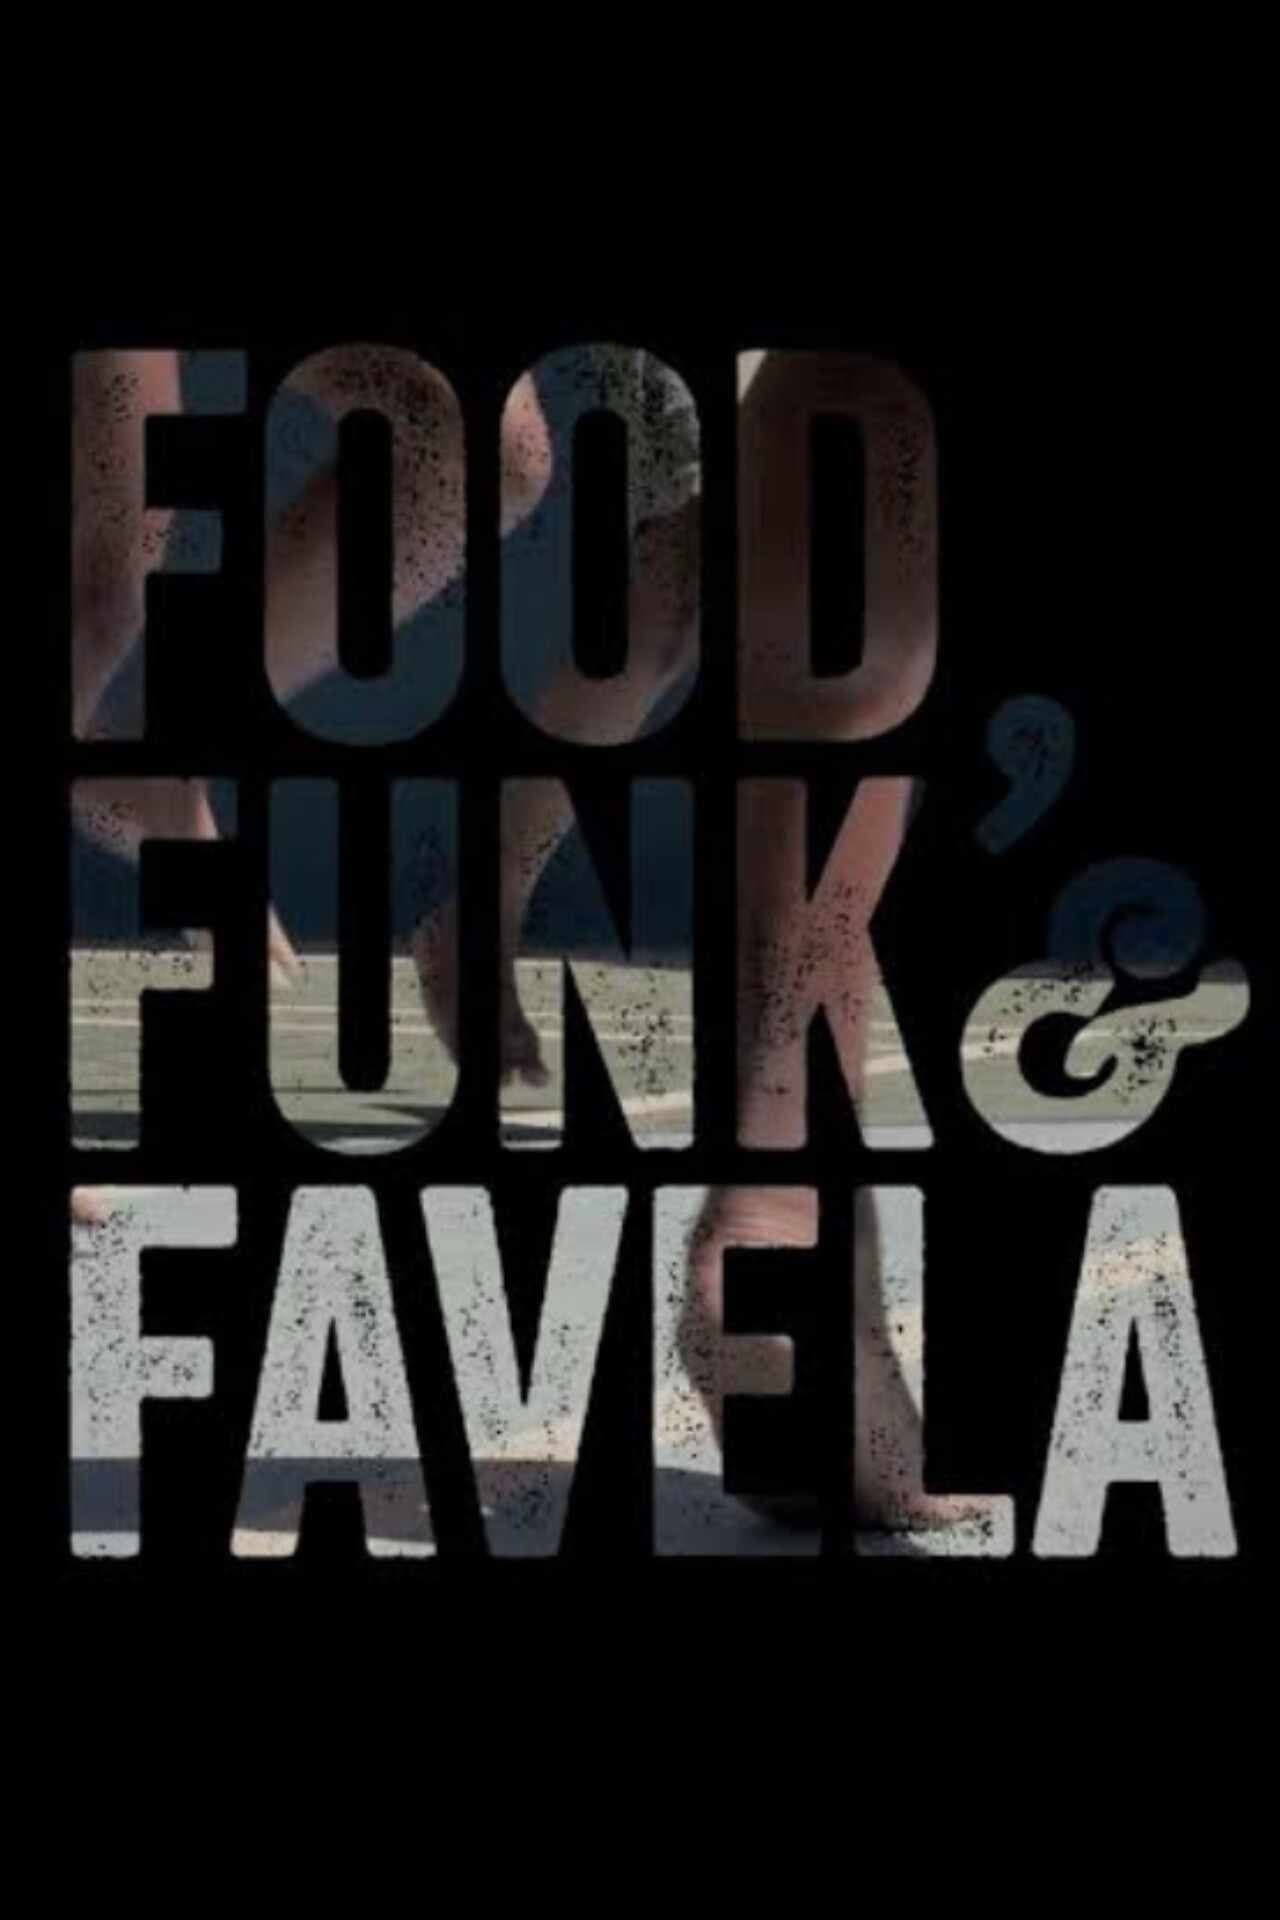 Food, Funk & Favela